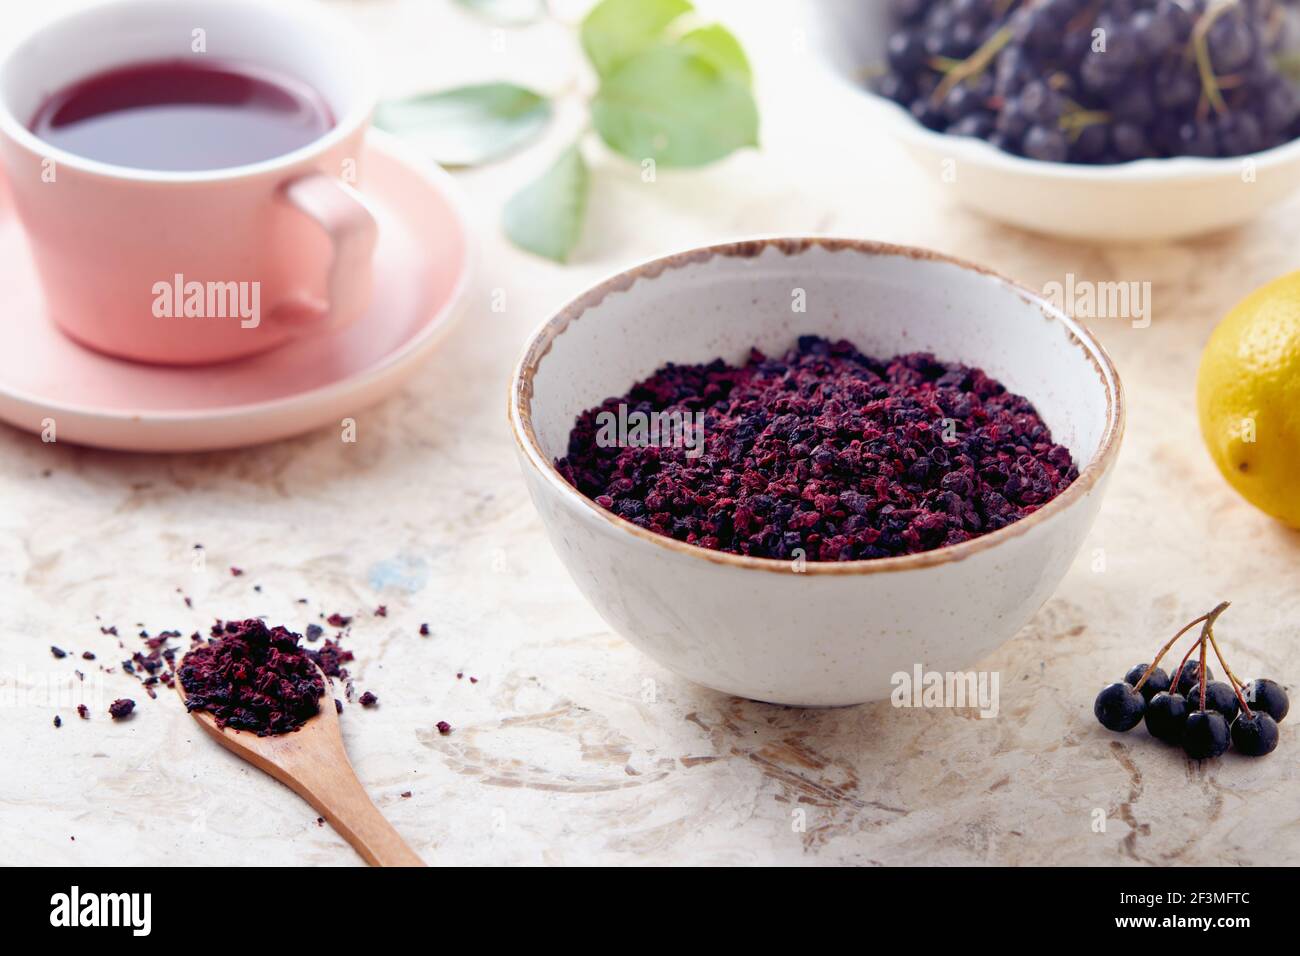 Té de bayas de Aronia. Las bayas de aronia secas se utilizan comúnmente para hacer té herbario rico en antioxidantes. Foto de stock